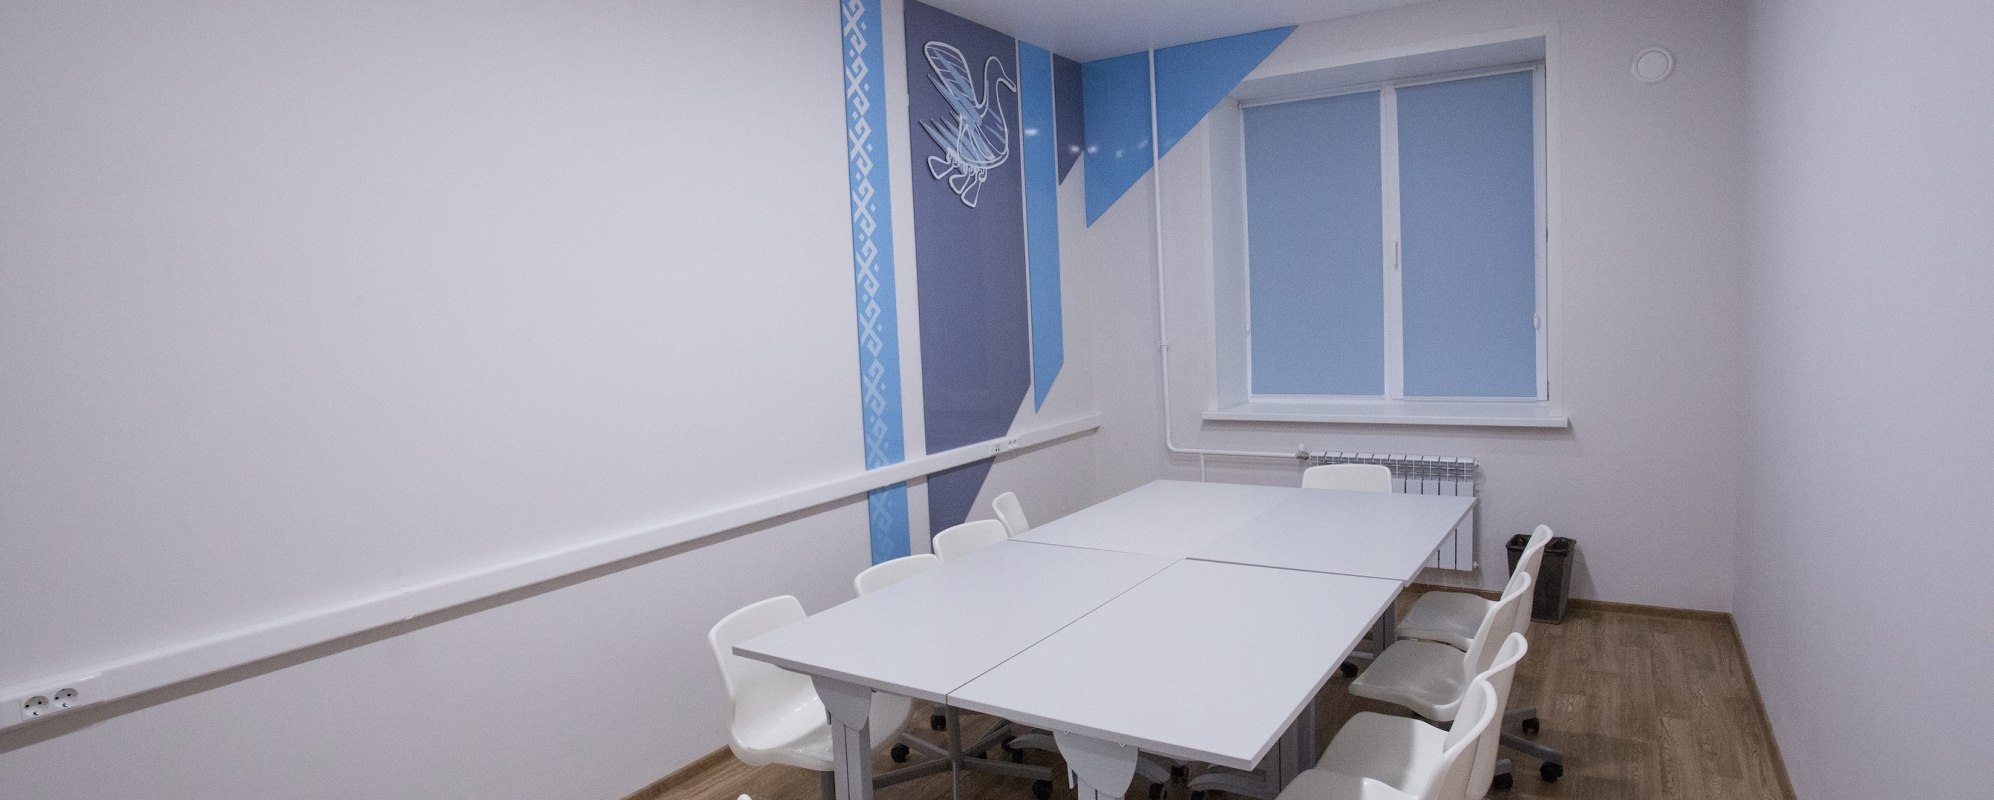 Фотографии комнаты для переговоров Точка кипения Зал Цифрокот